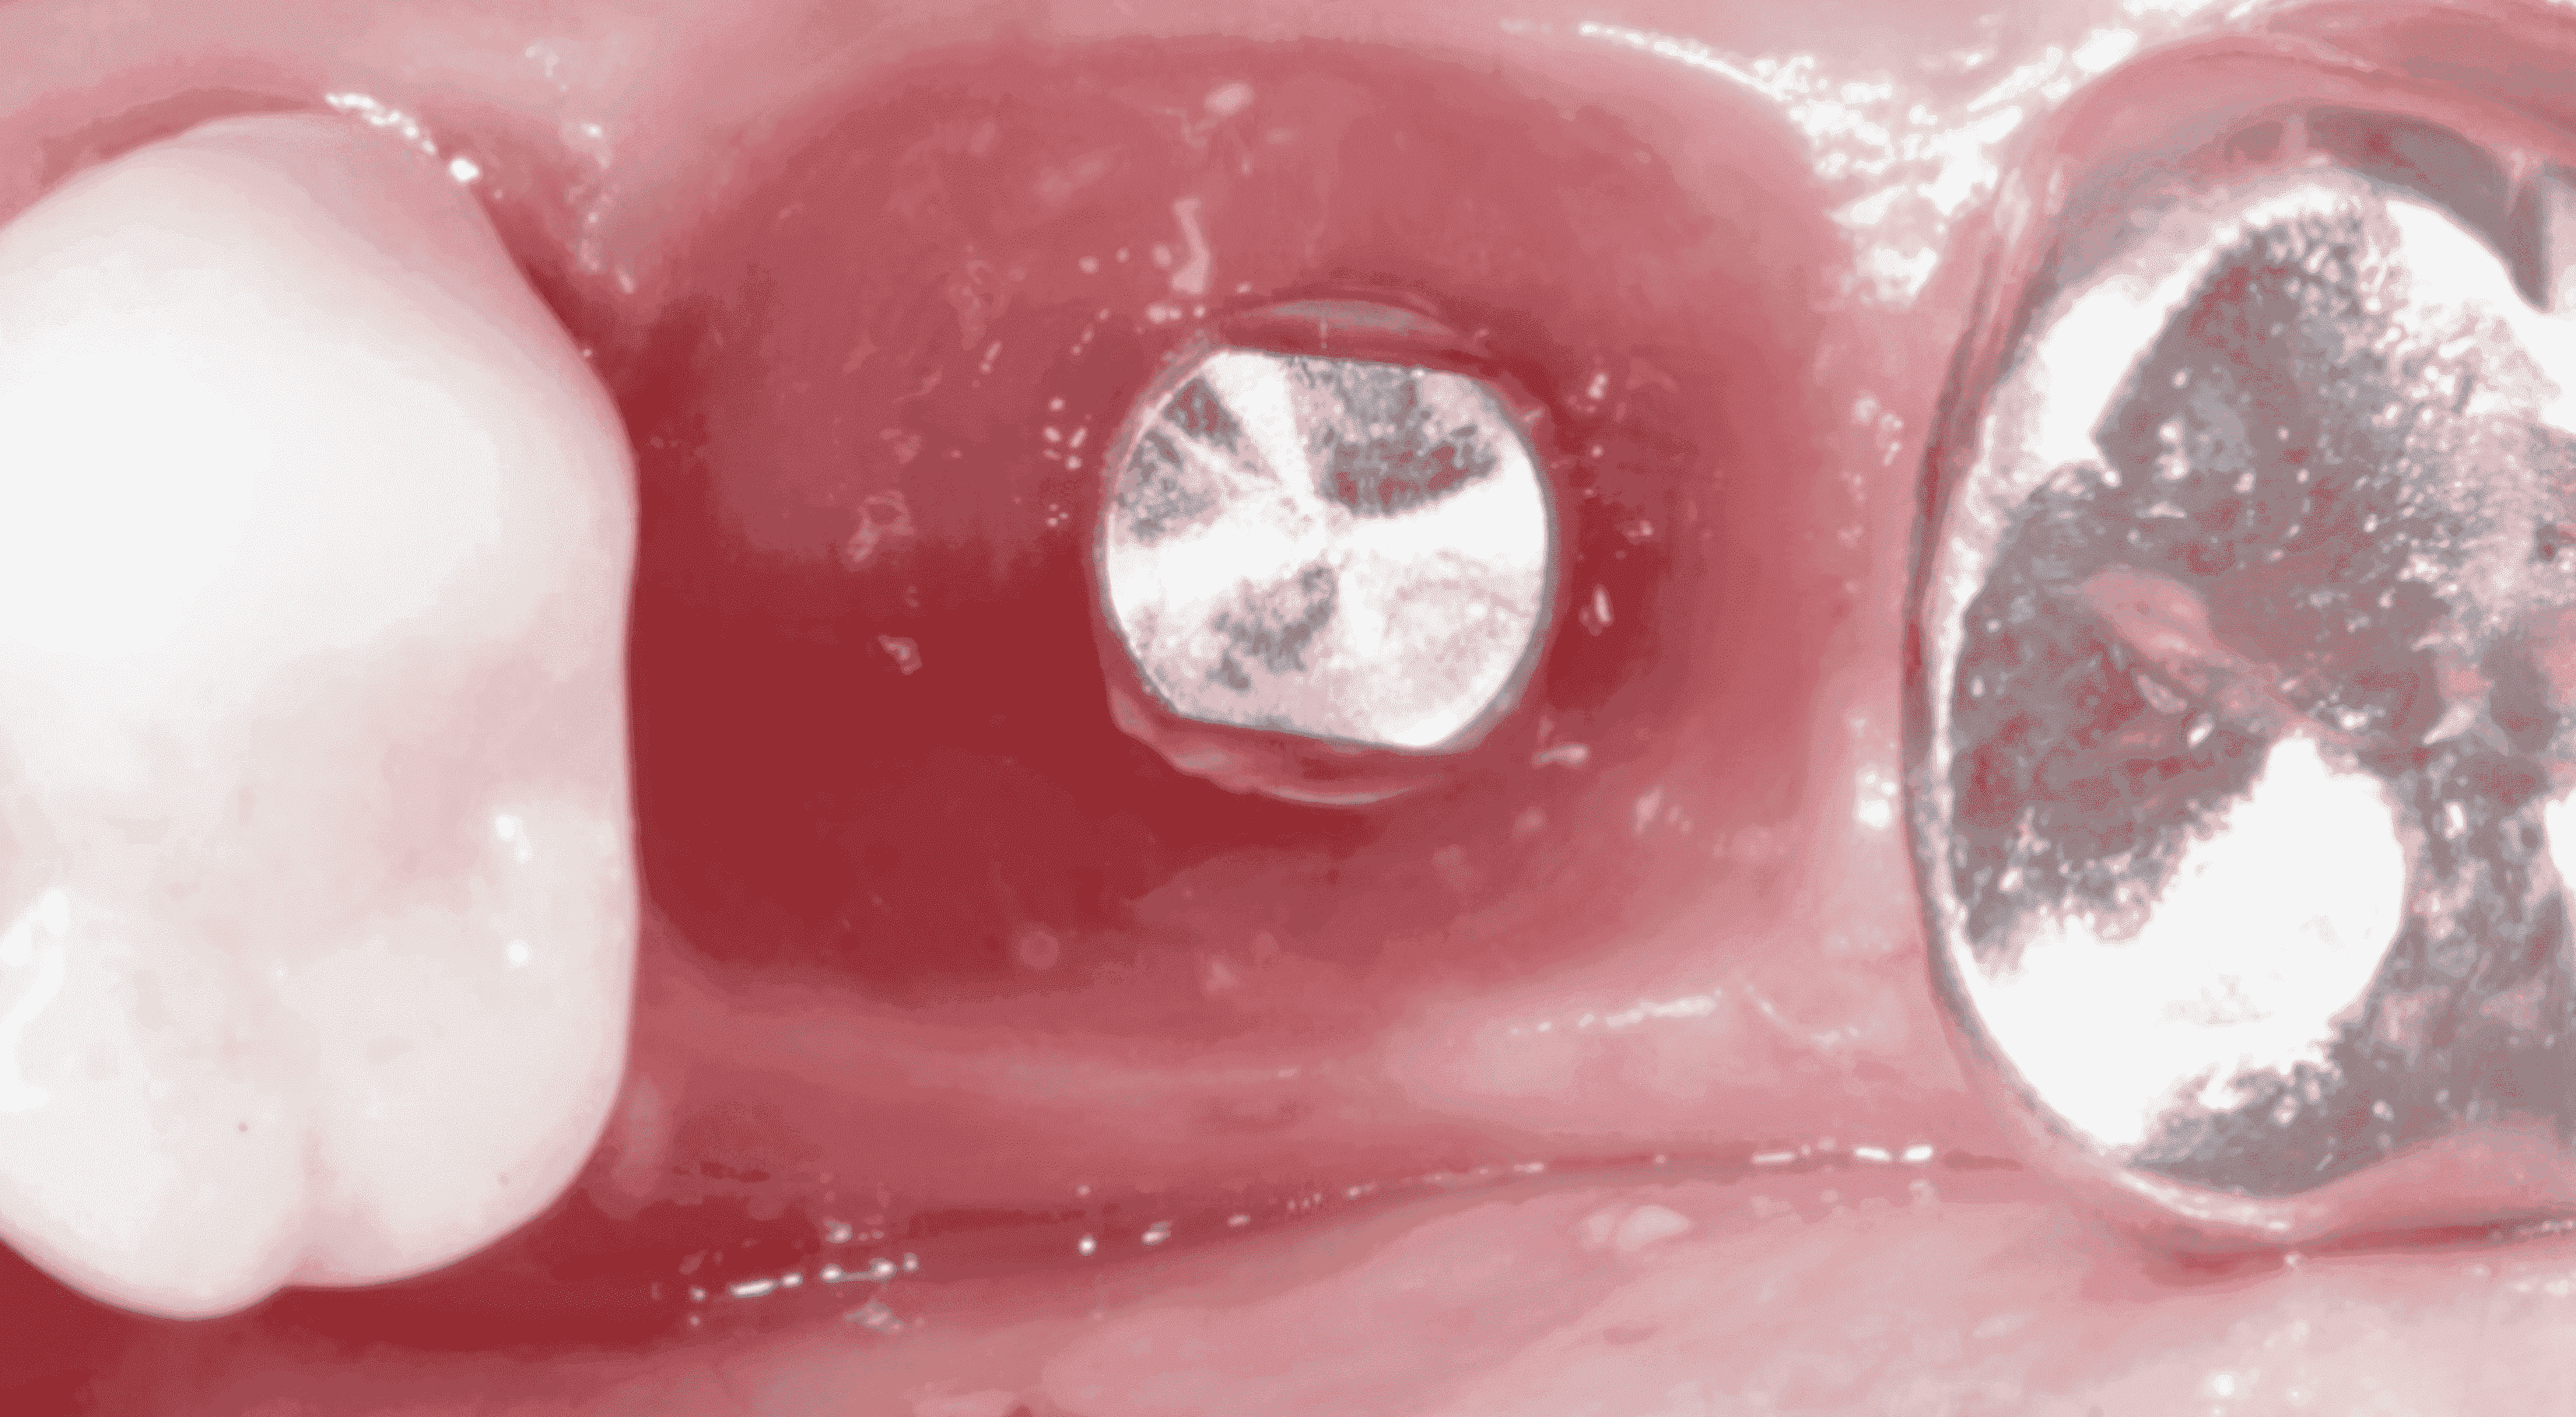 Perfil de emergencia 1 1 1 1 1 1 1 1 1 e1705672039192 - Implante Imediato Arcsys em molar inferior